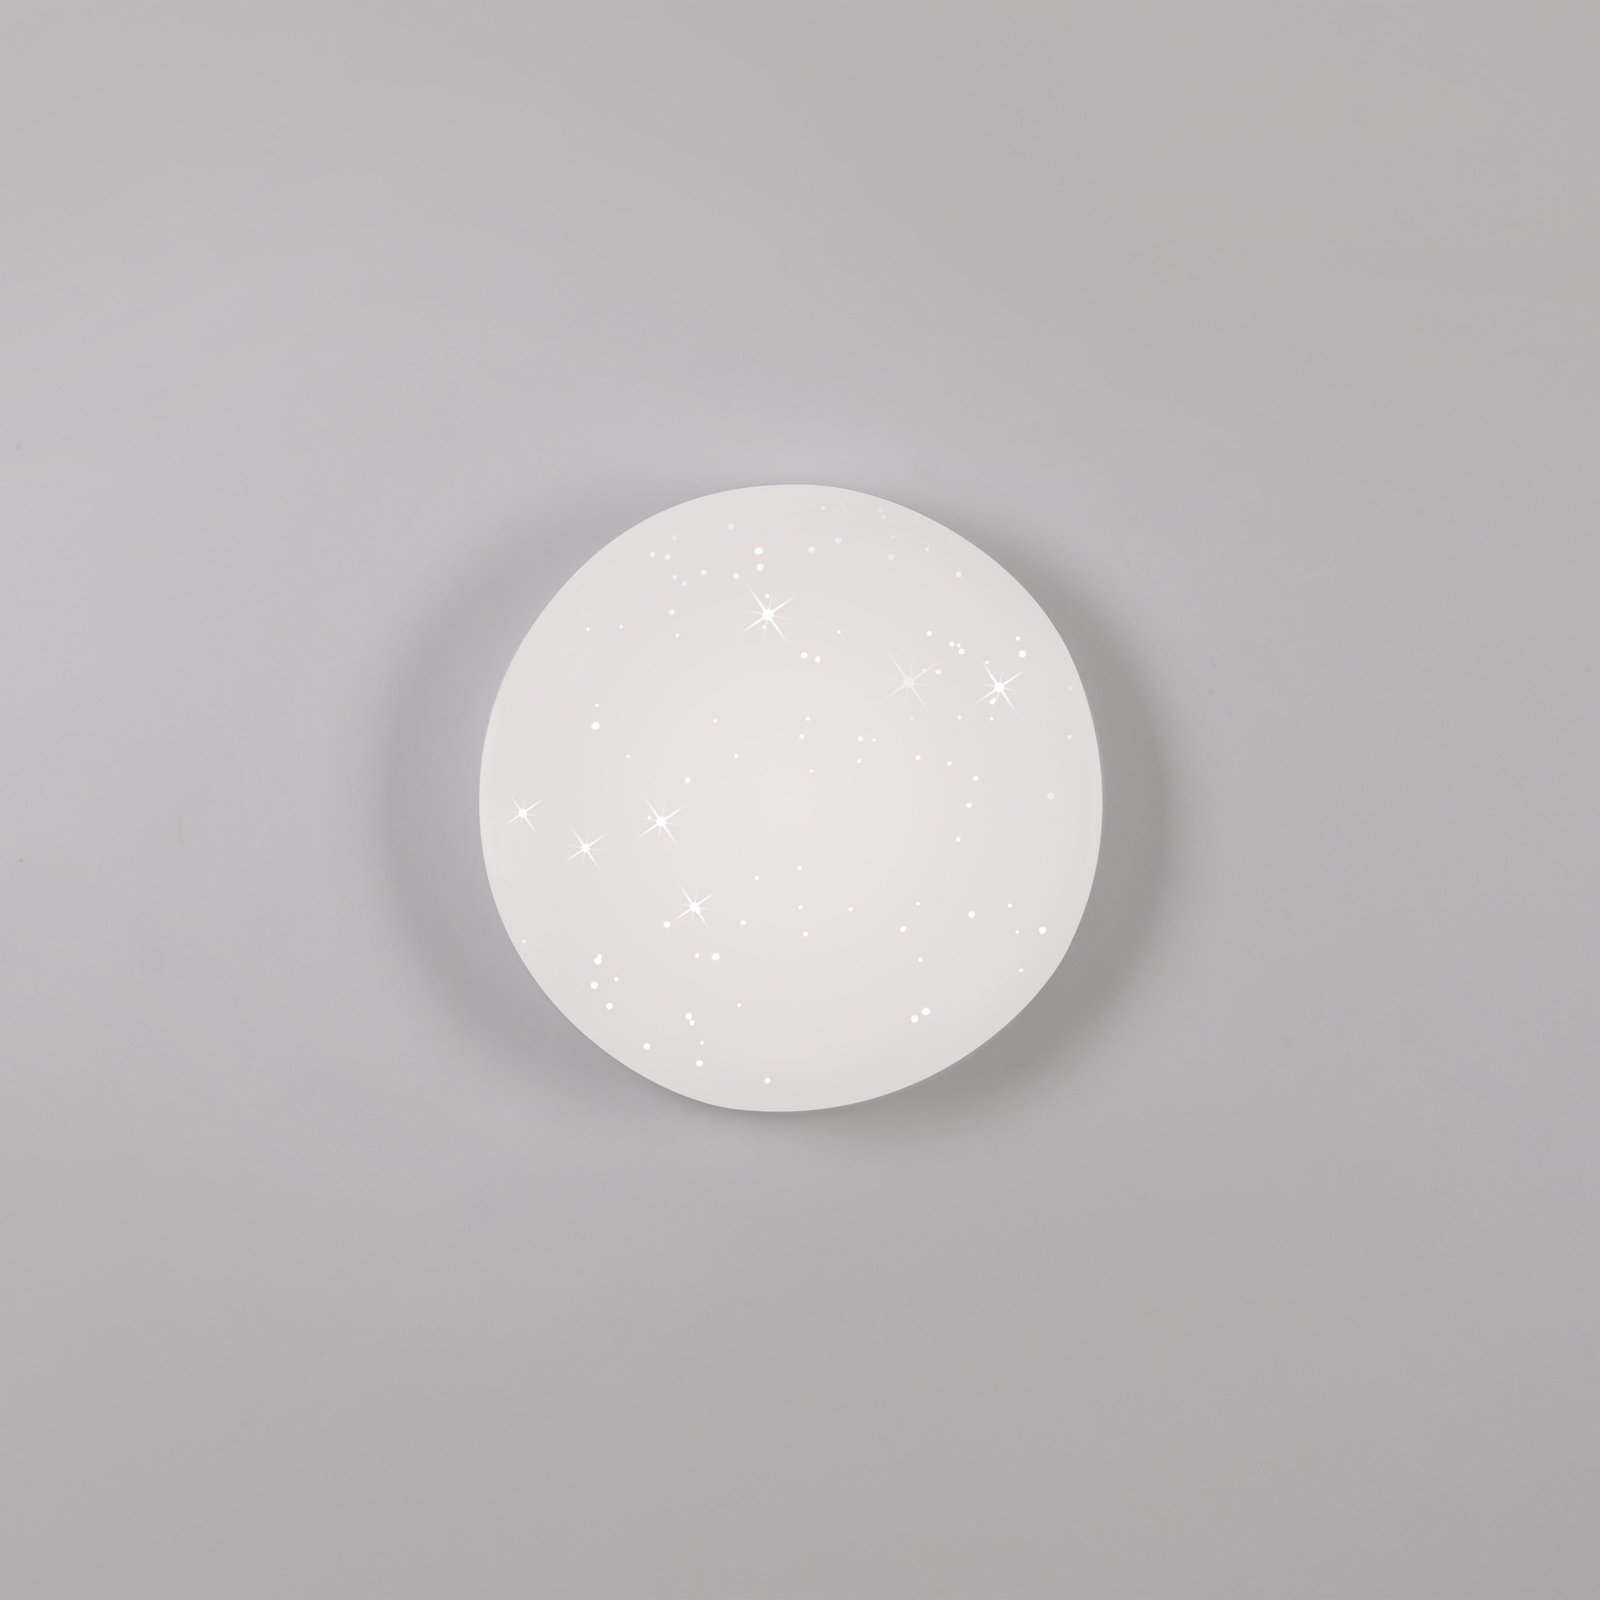 JUST LIGHT. LED ceiling light Uranus, plastic, 3,000 K